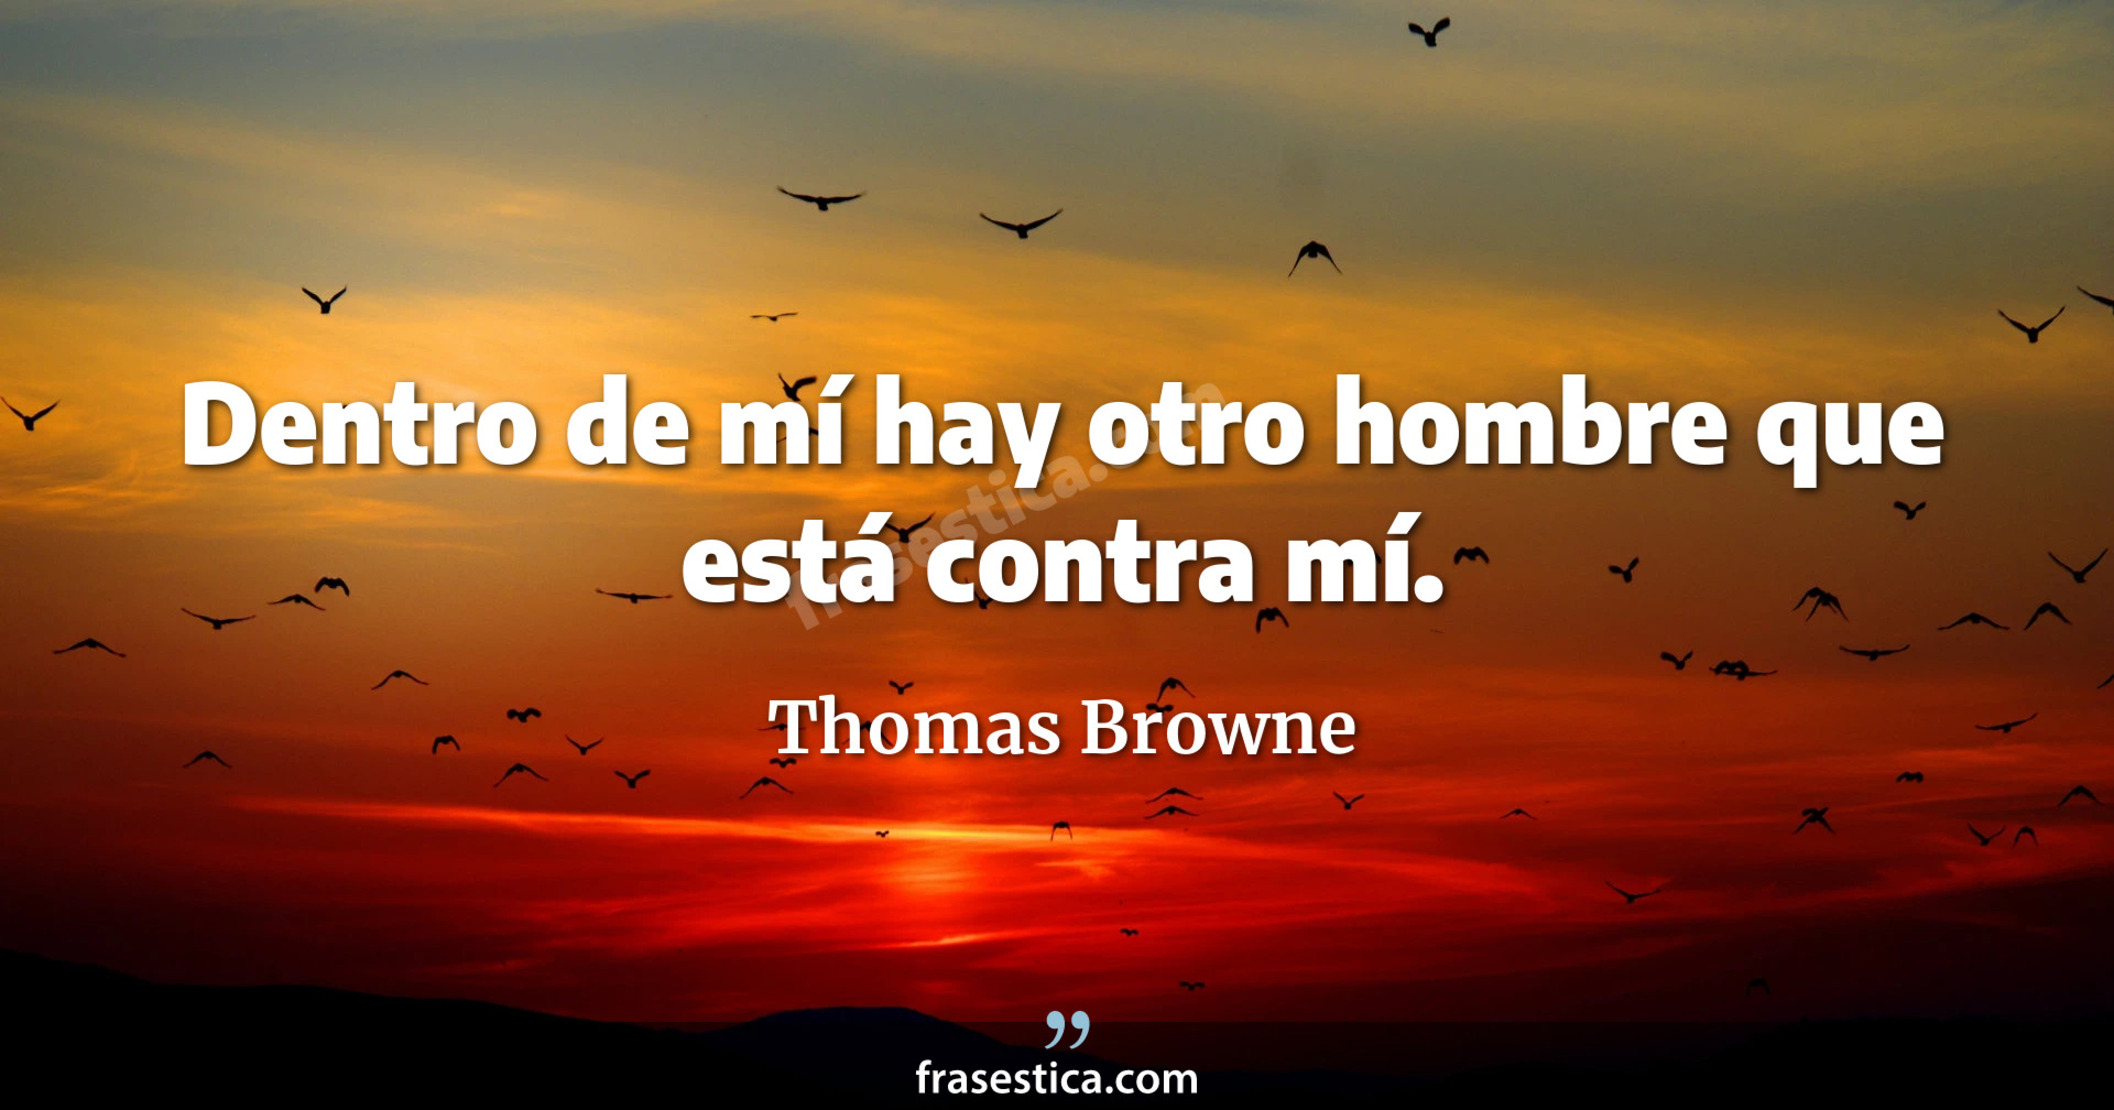 Dentro de mí hay otro hombre que está contra mí. - Thomas Browne